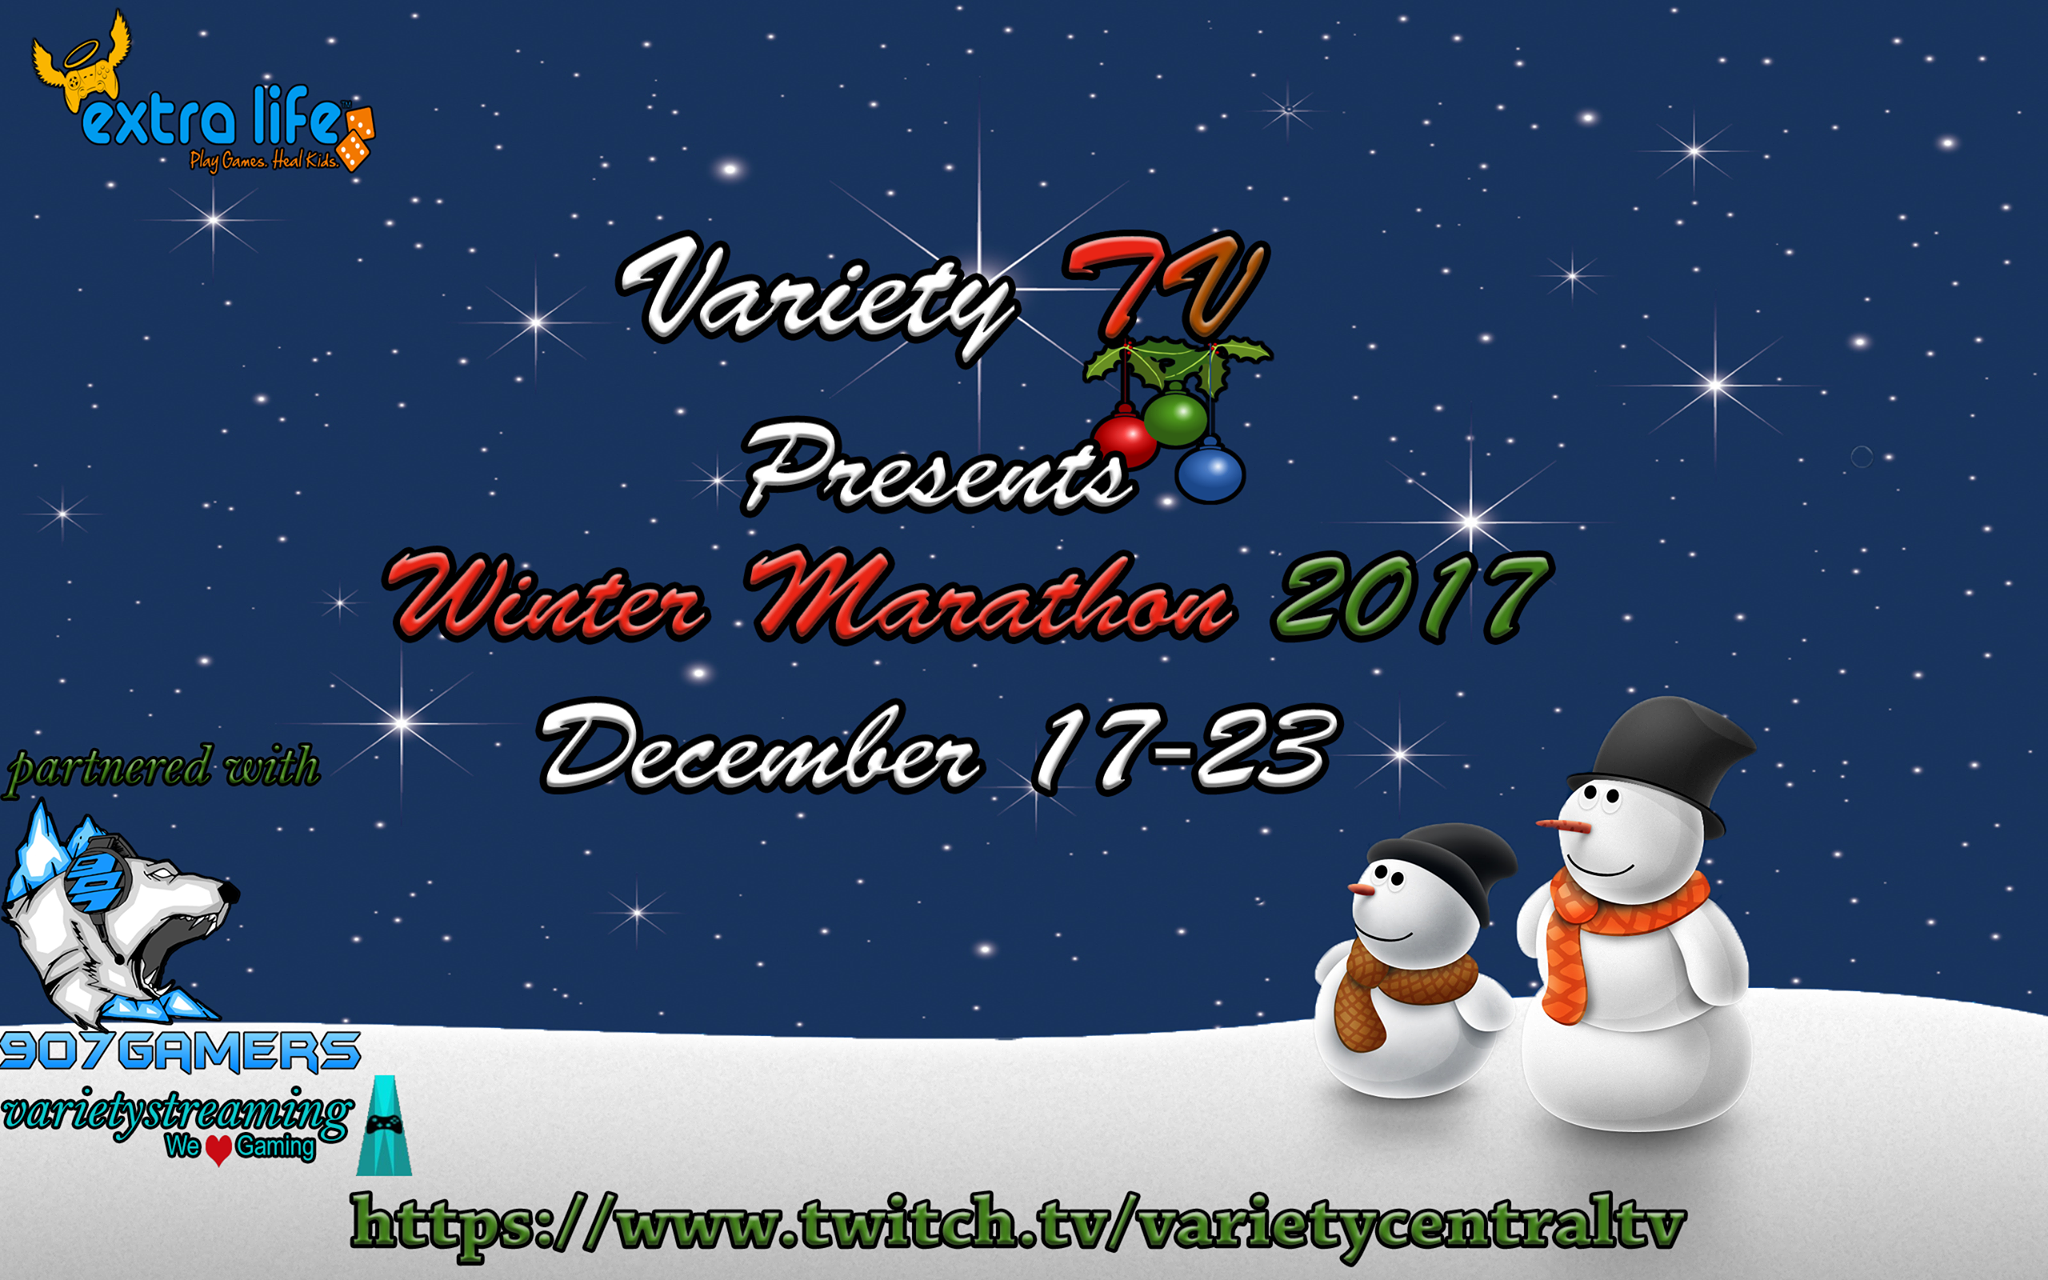 VarietyTV Winter Marathon 2017.png